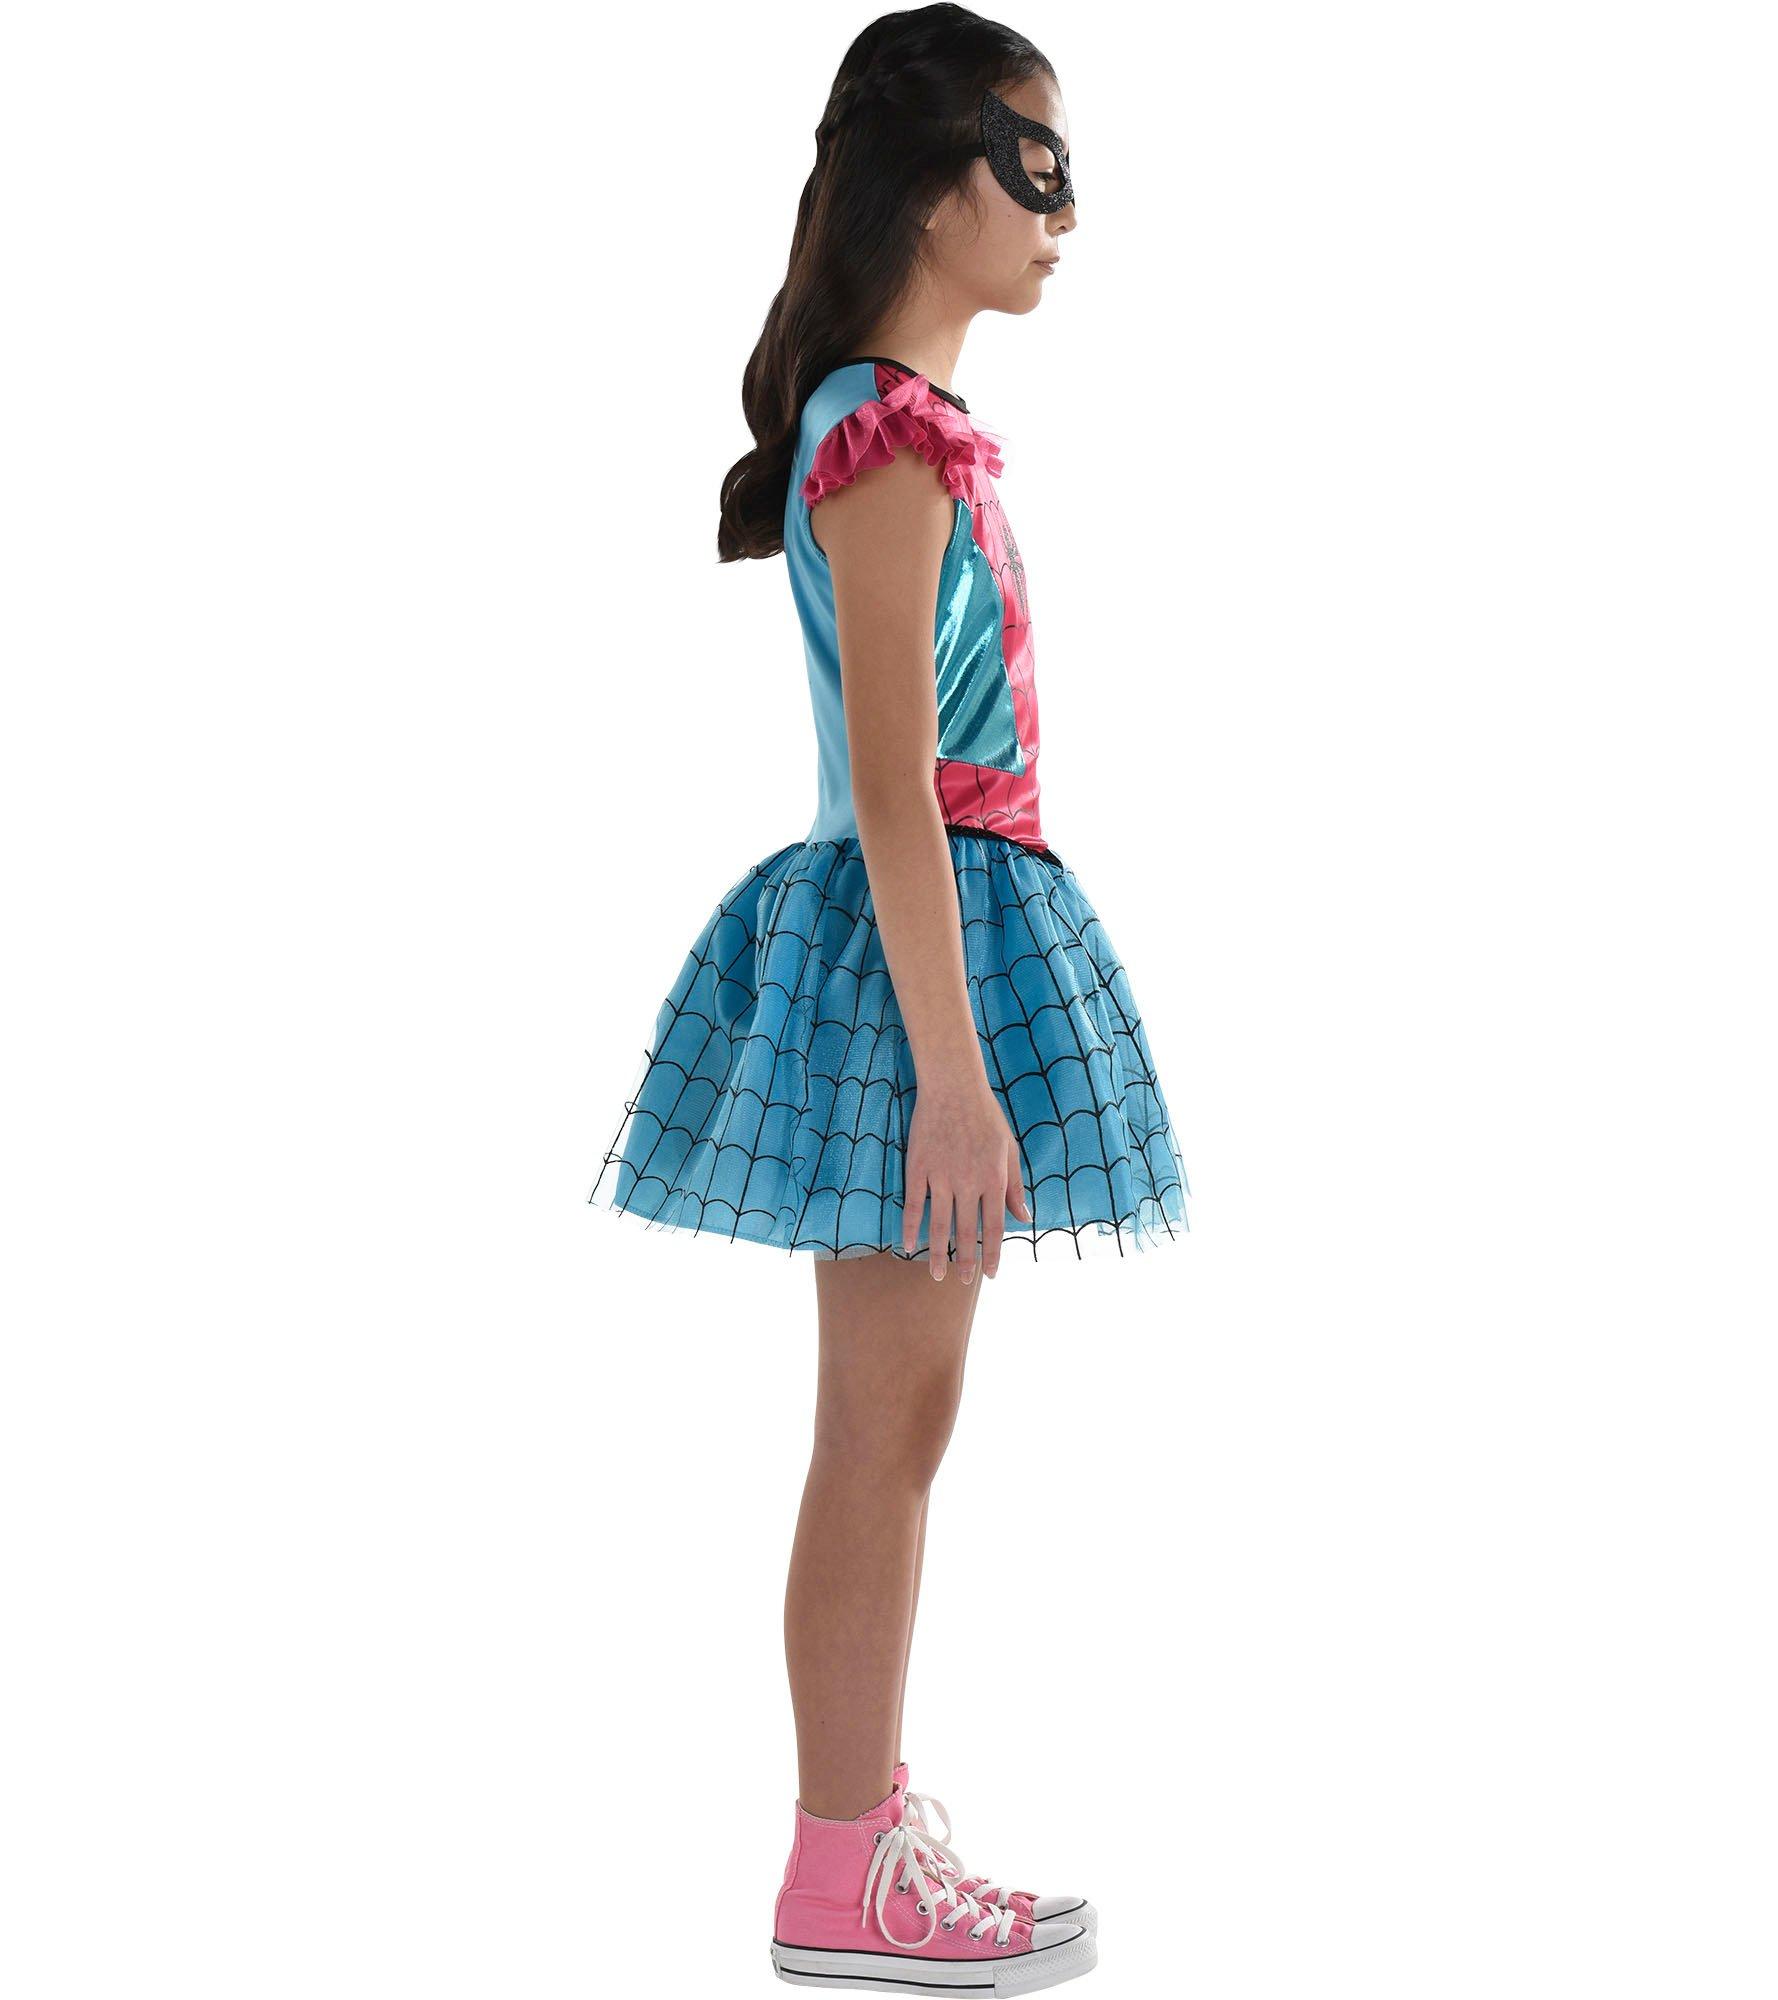 Kids' Pink & Blue Spider-Girl Costume - Marvel